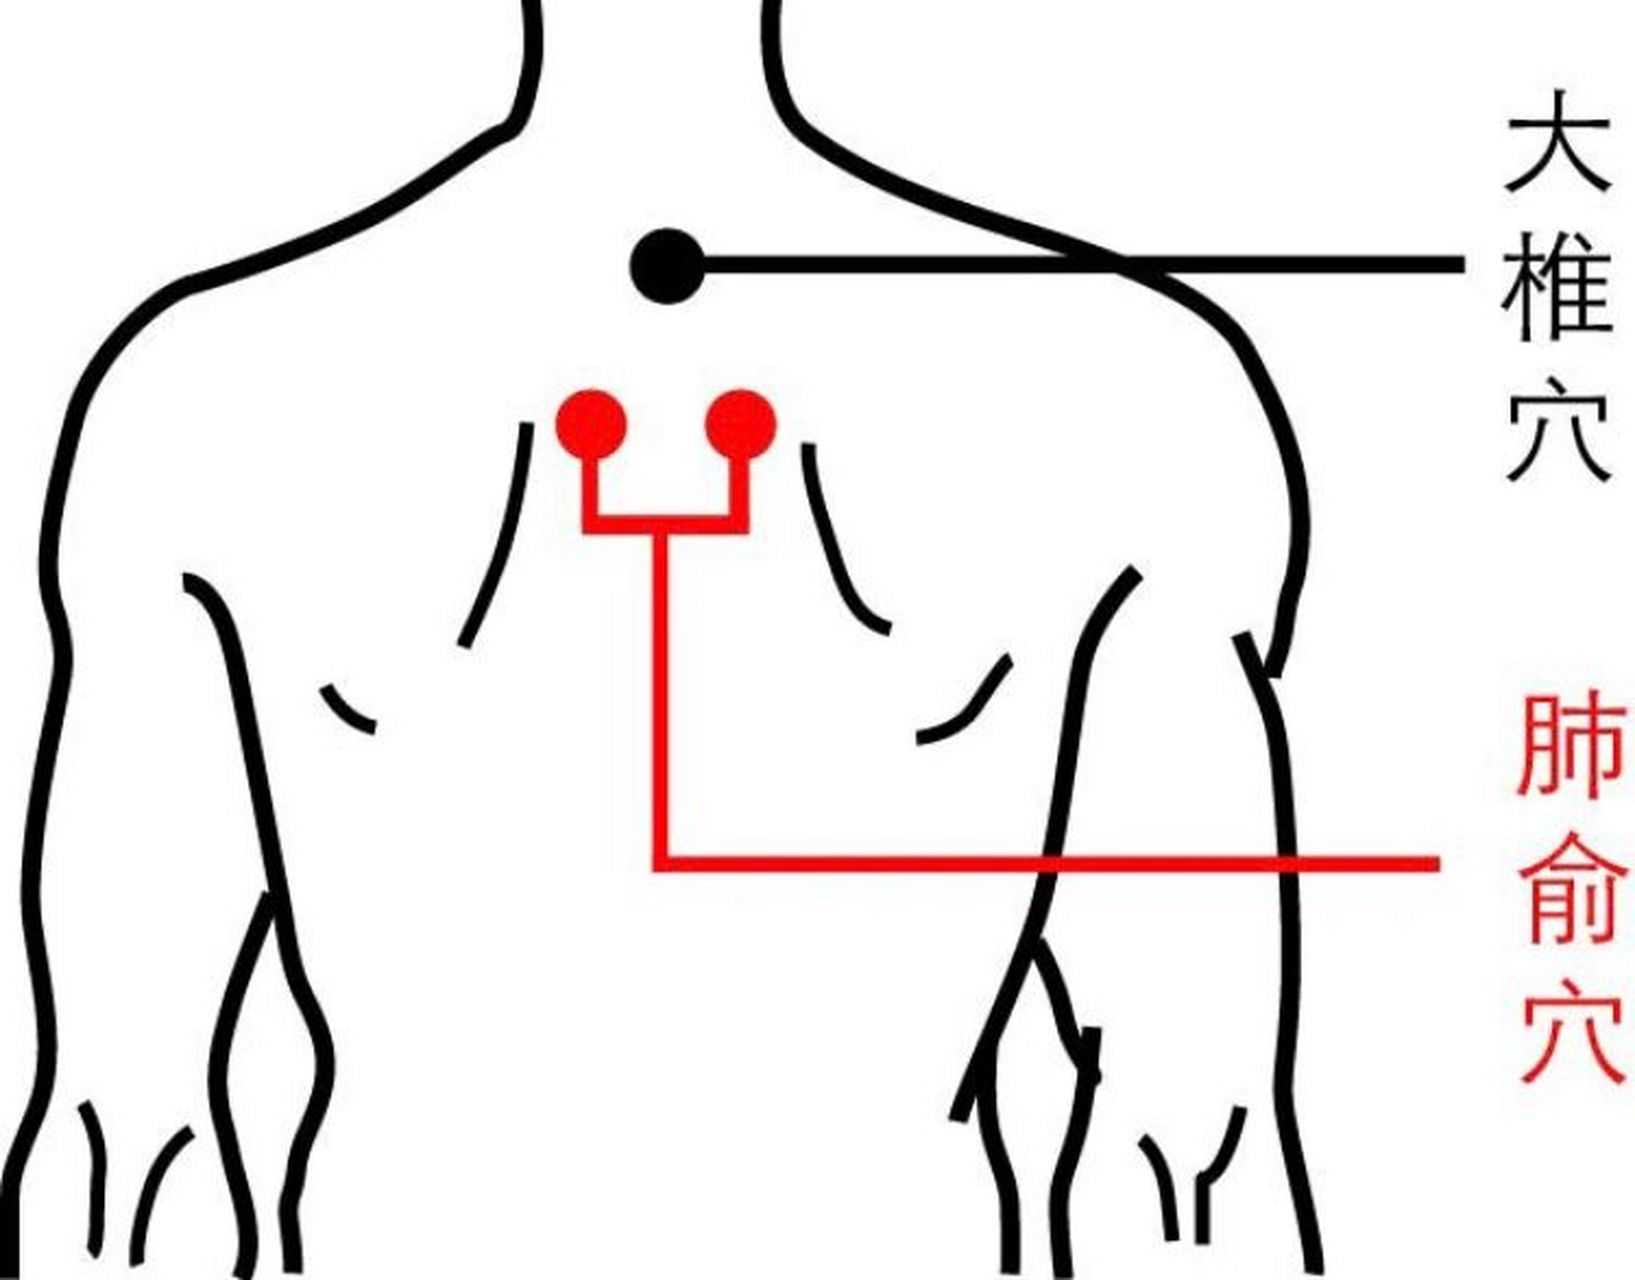 肺部对应后背哪个位置图片